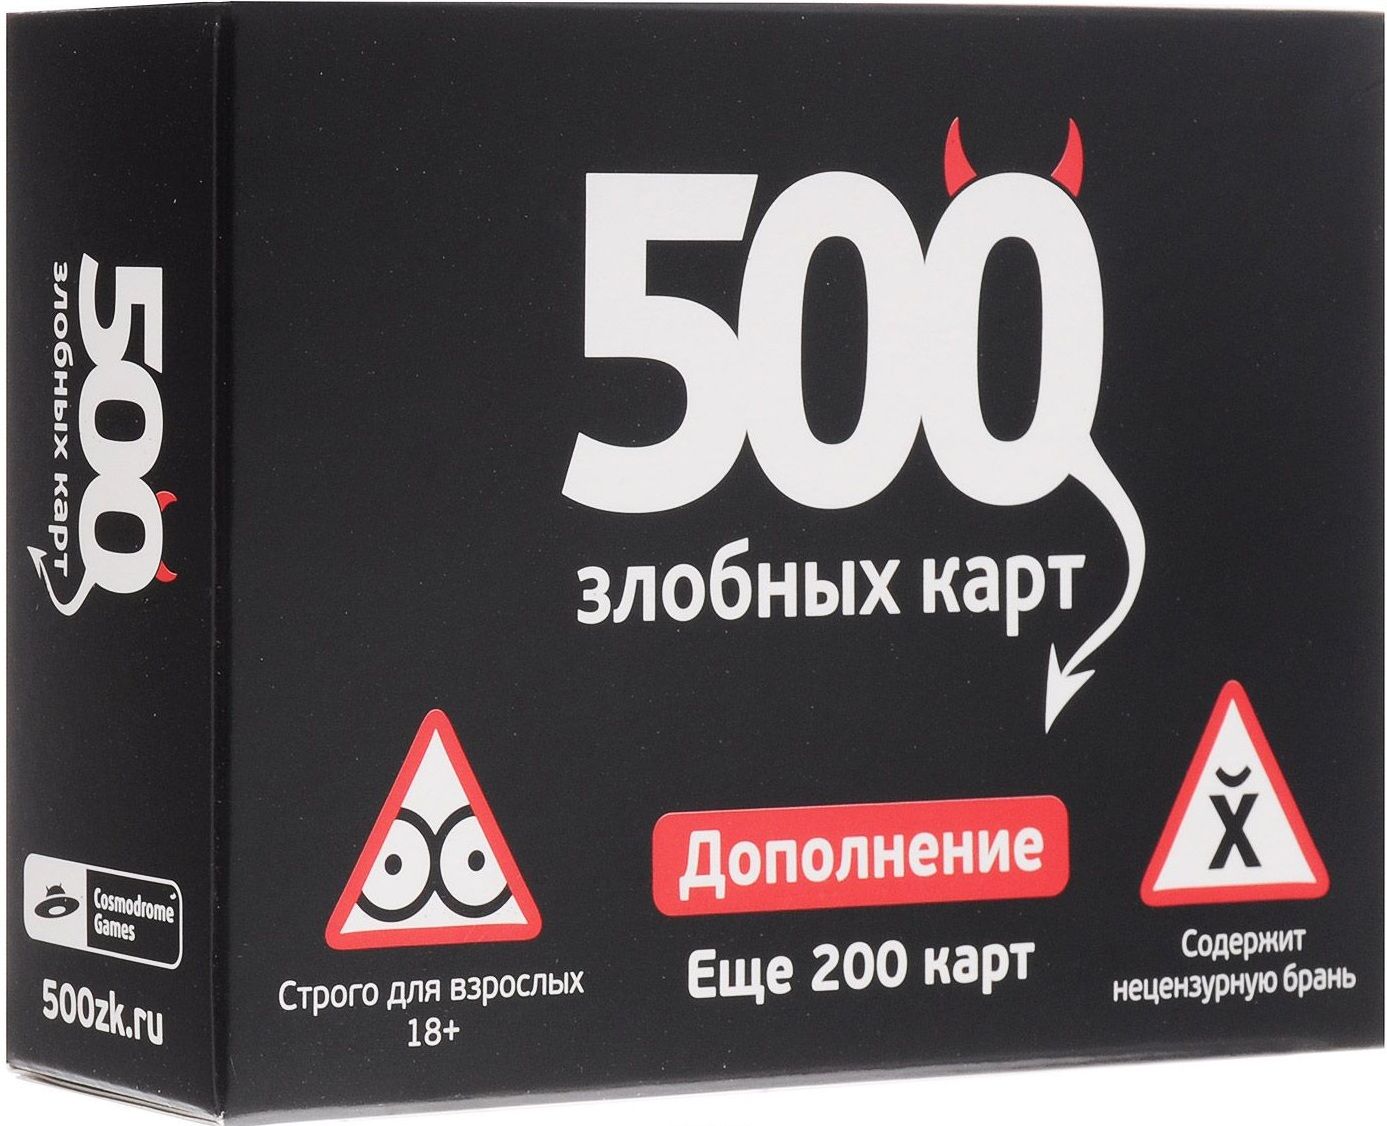 Cosmodrome Games Настольная игра "500 Злобных карт" ДОПОЛНЕНИЕ